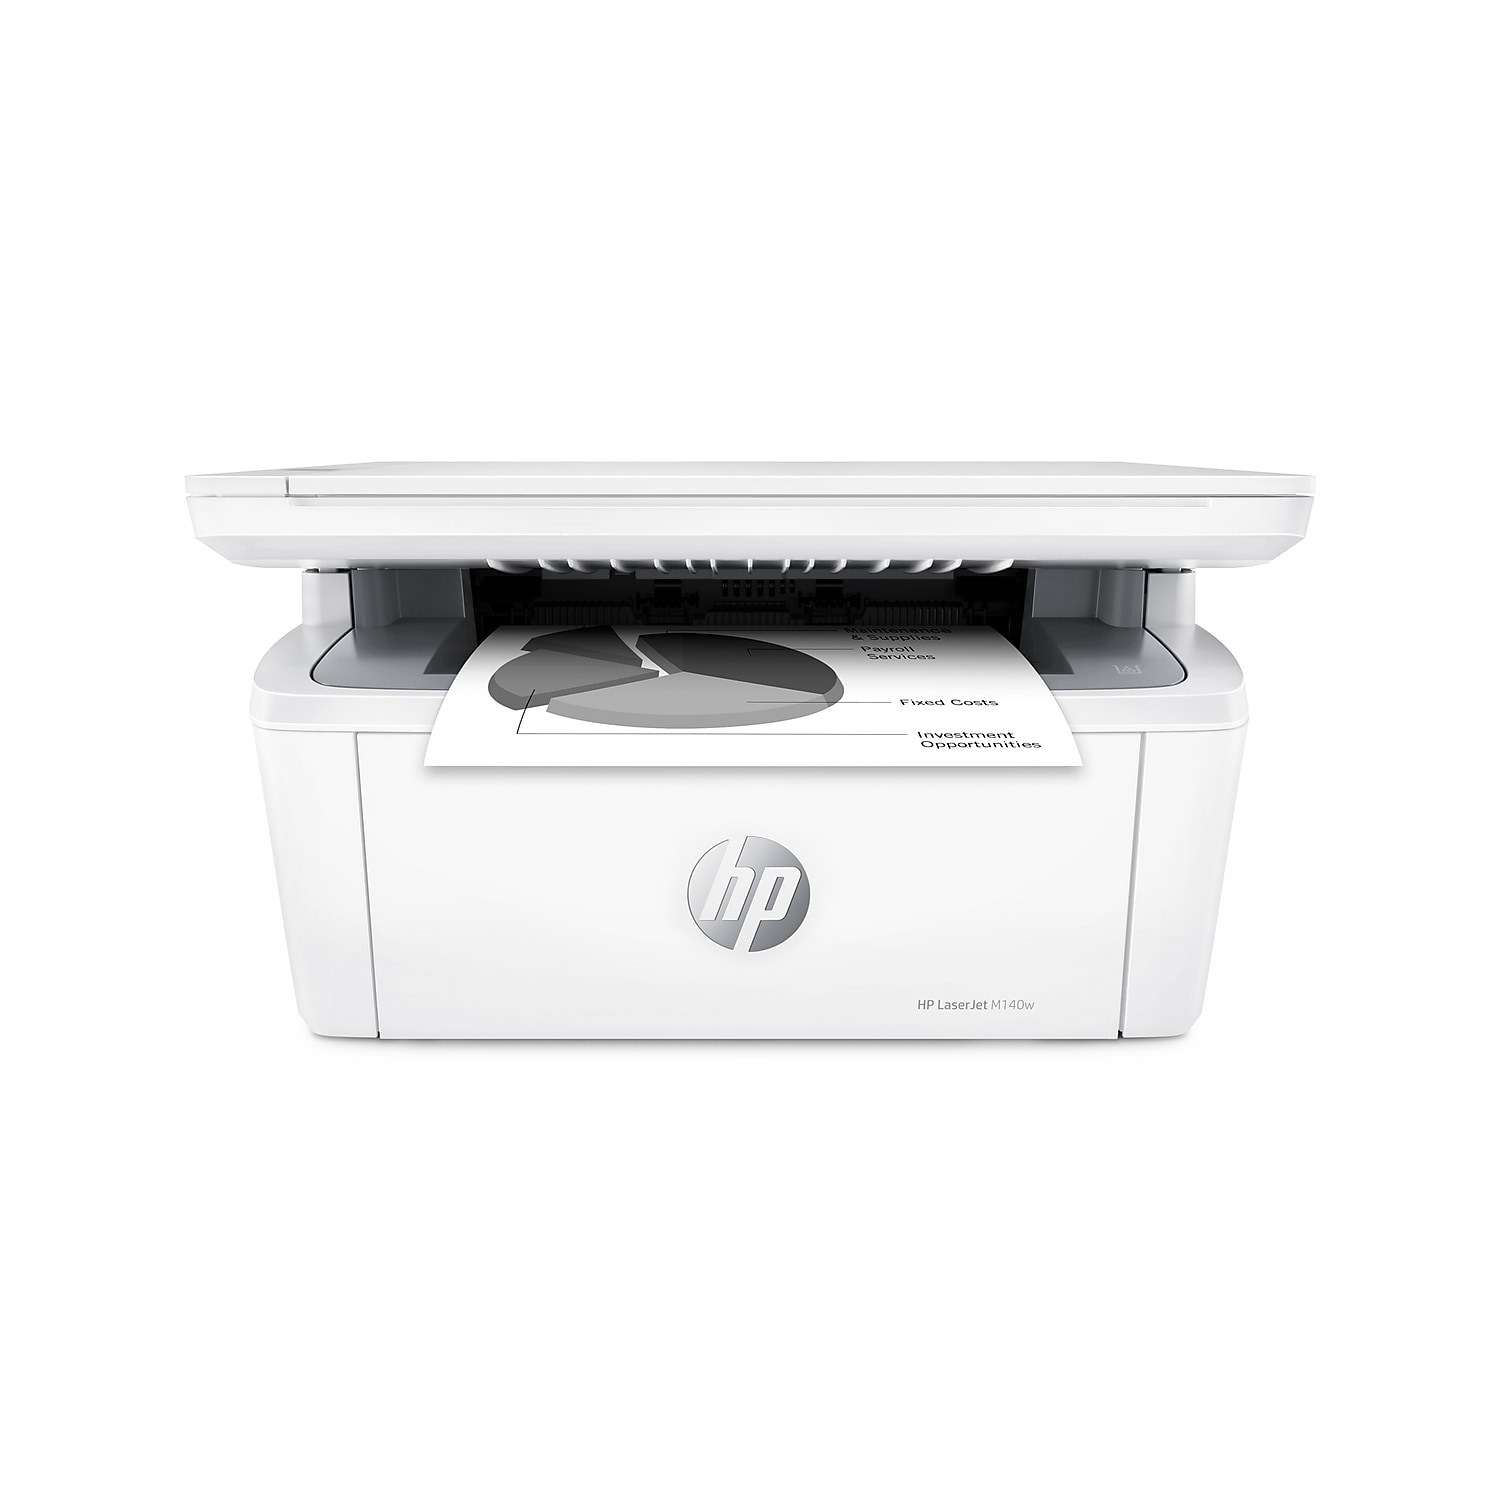 HP LaserJet M140w Wireless All-In-One Black & White Laser Print Scan Copy $129.99